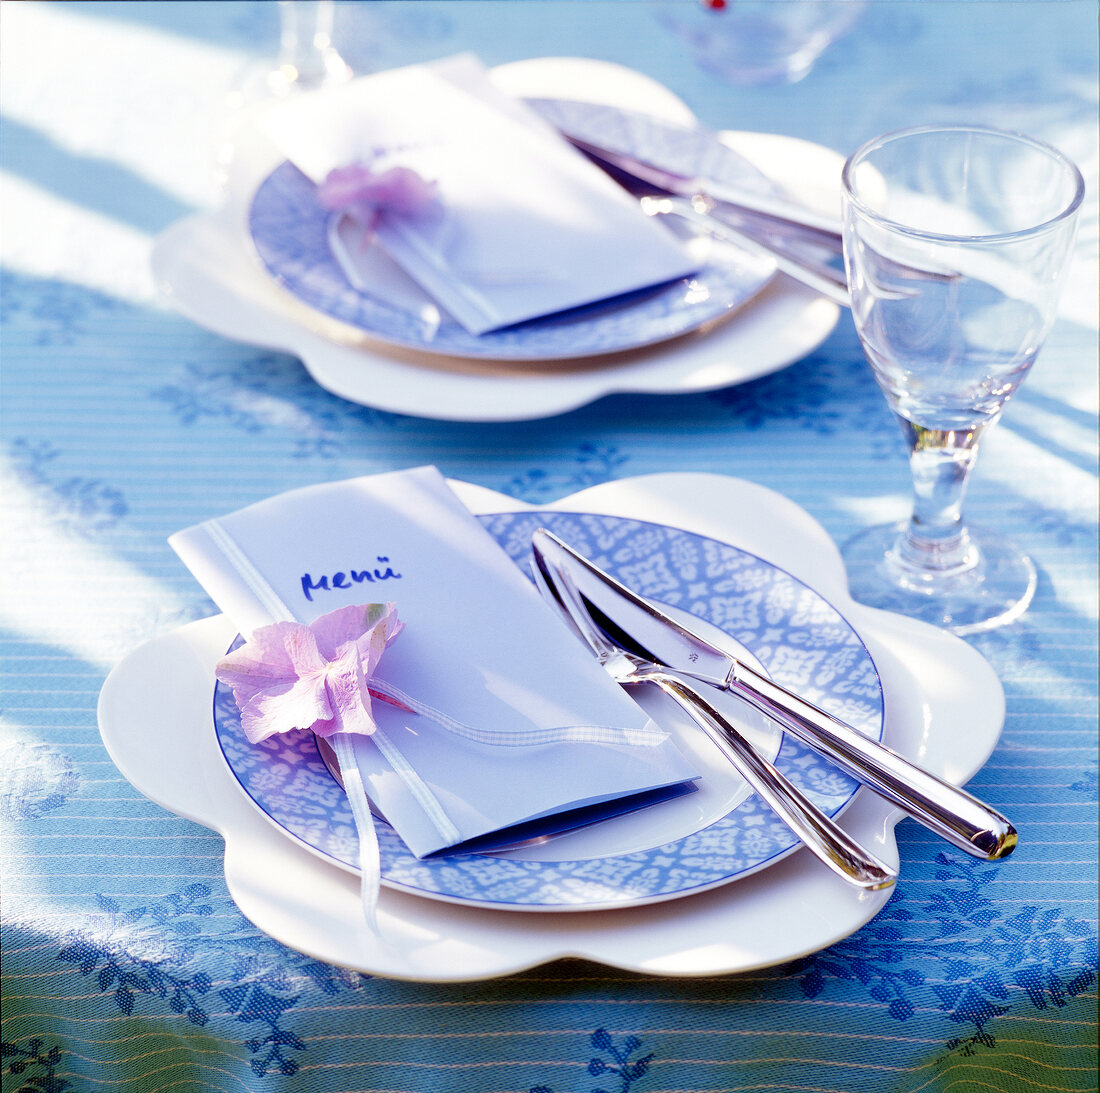 Tischgedeck in Blau-Weiß, Menükarte + Besteck auf Teller, Glas